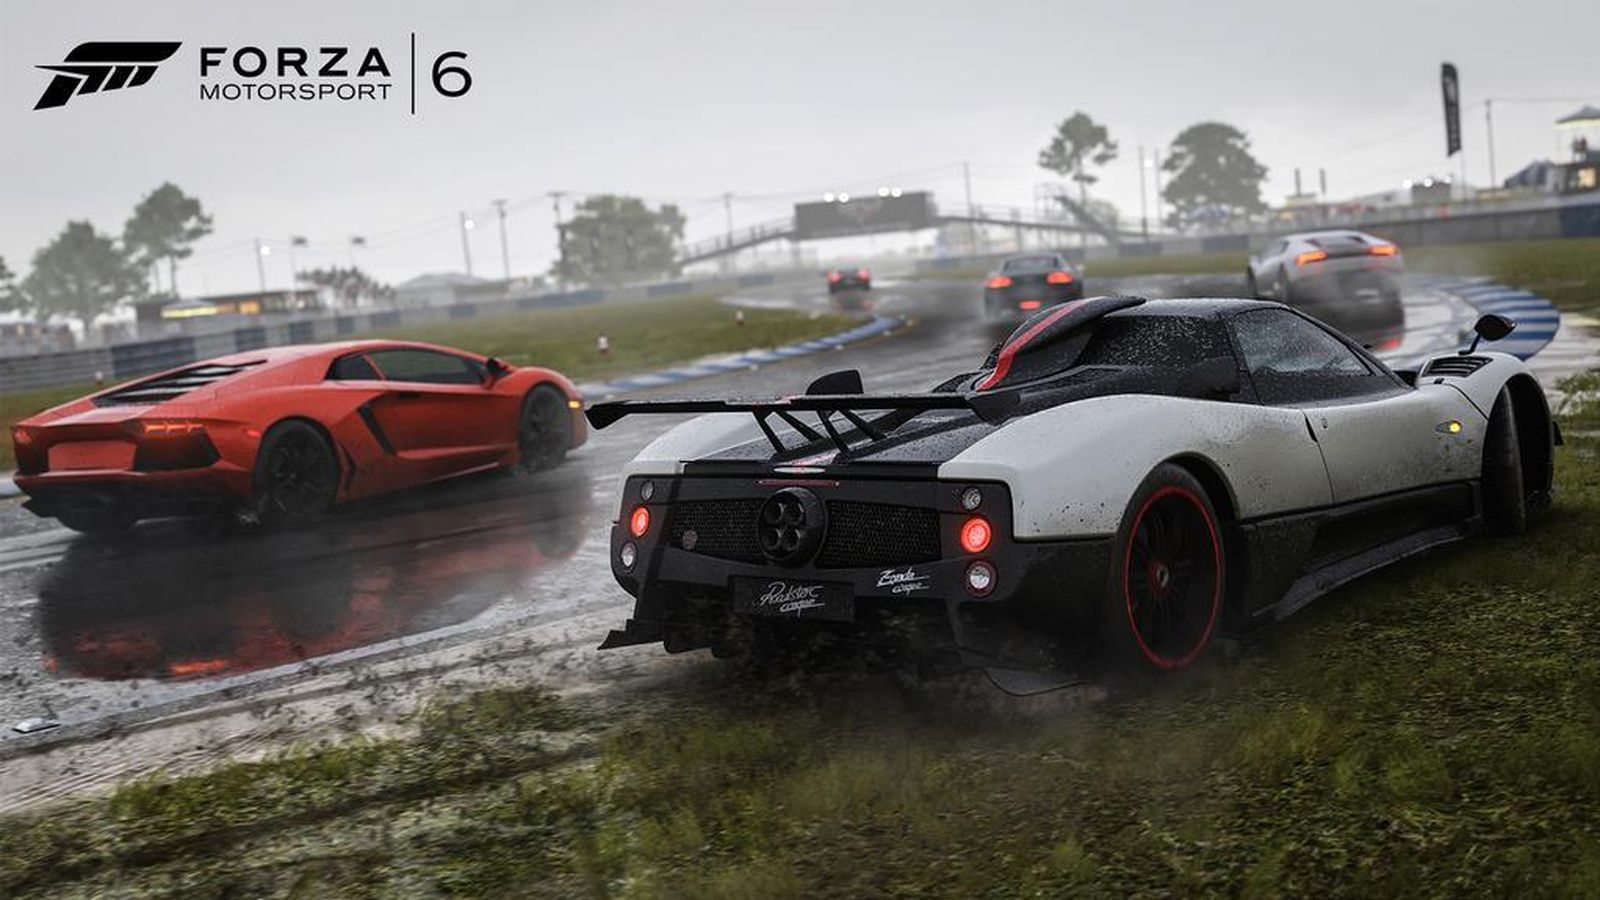 Foto: Forza Motorsport 6